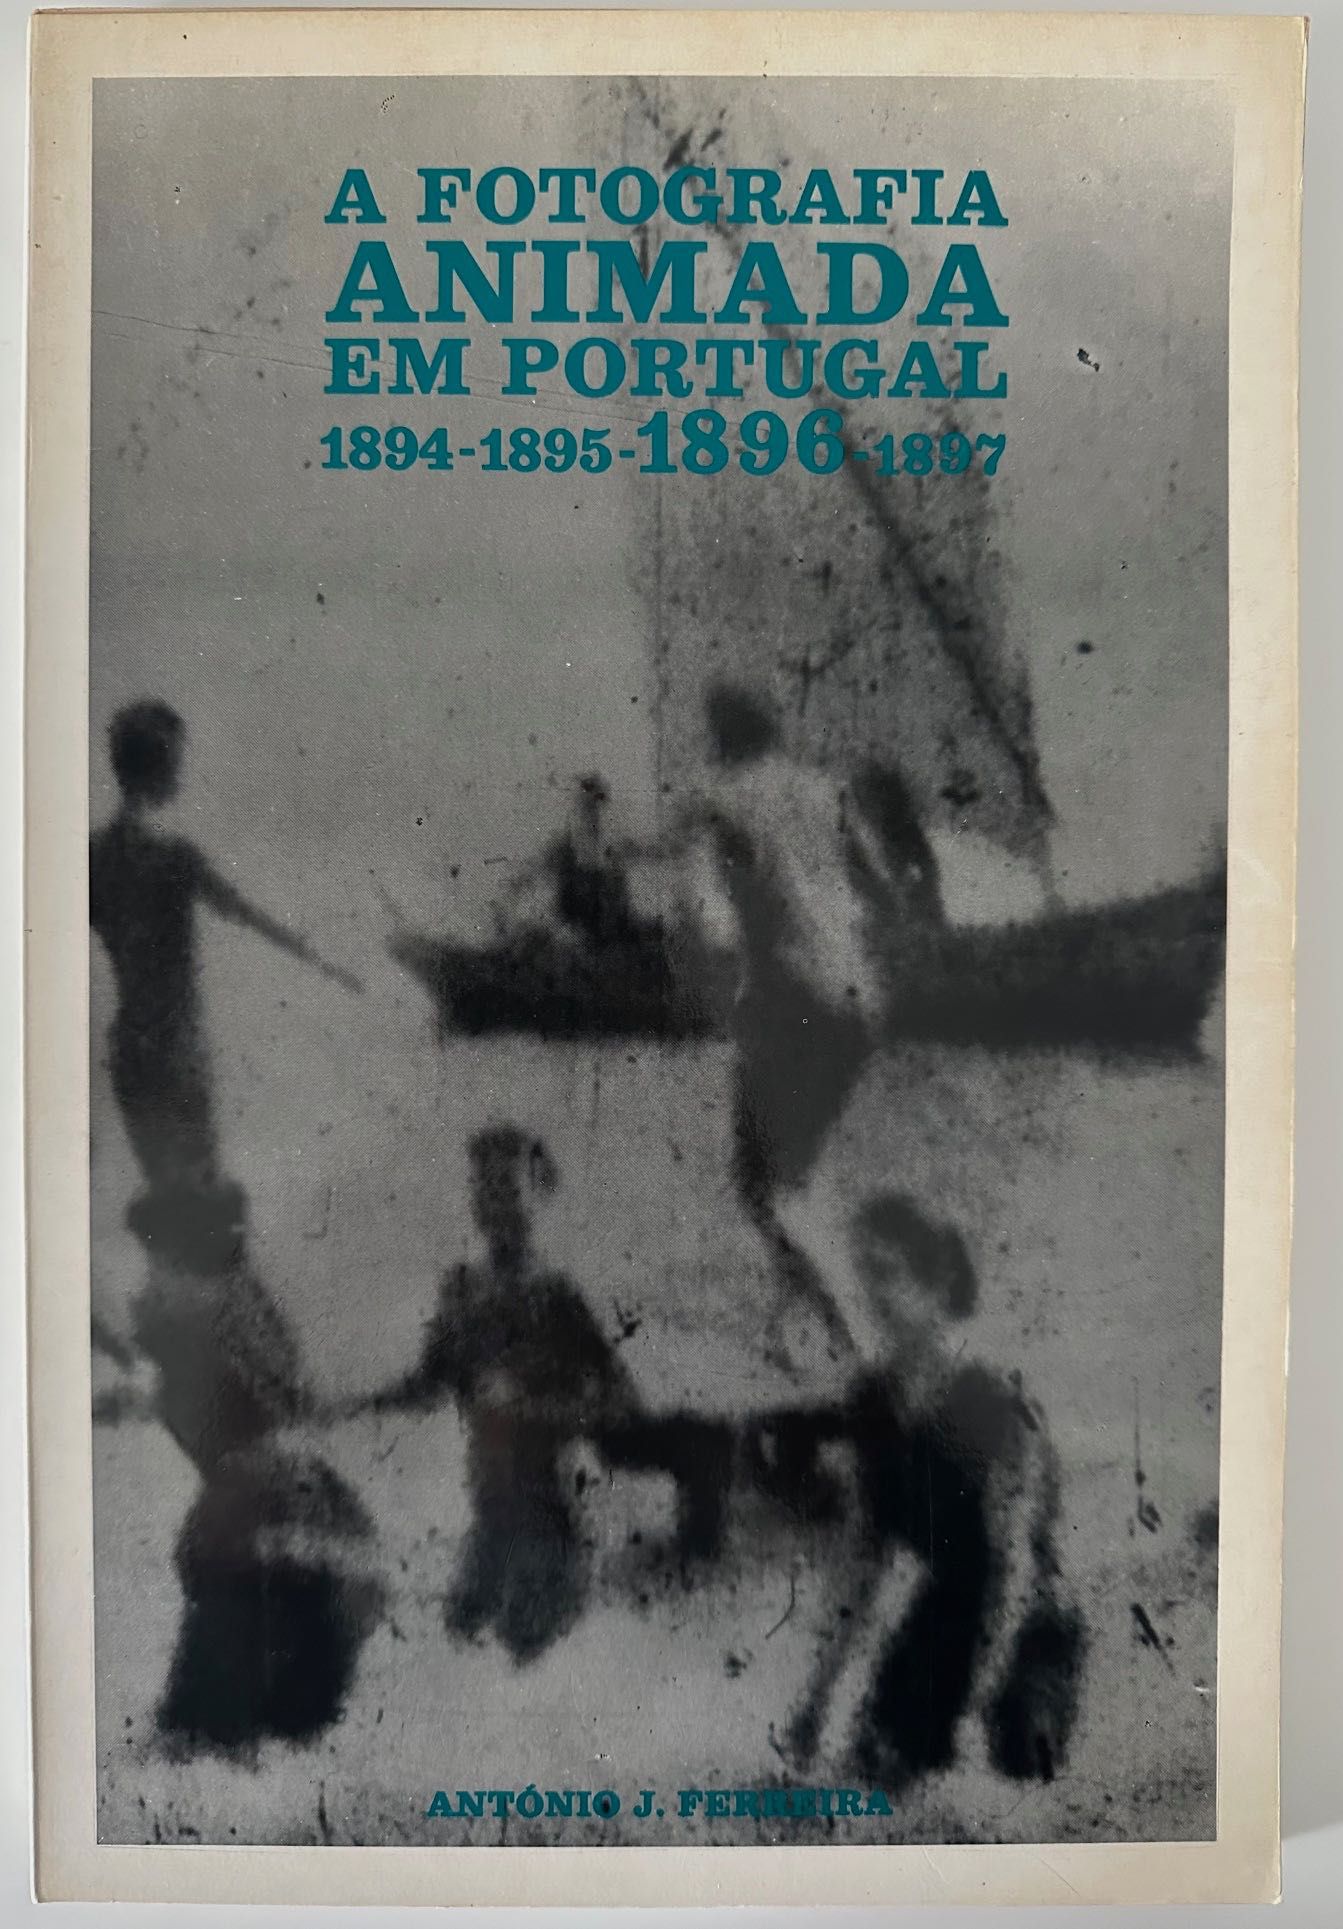 A Fotografia Animada em Portugal 1894/1897 - Cinemateca - 1986